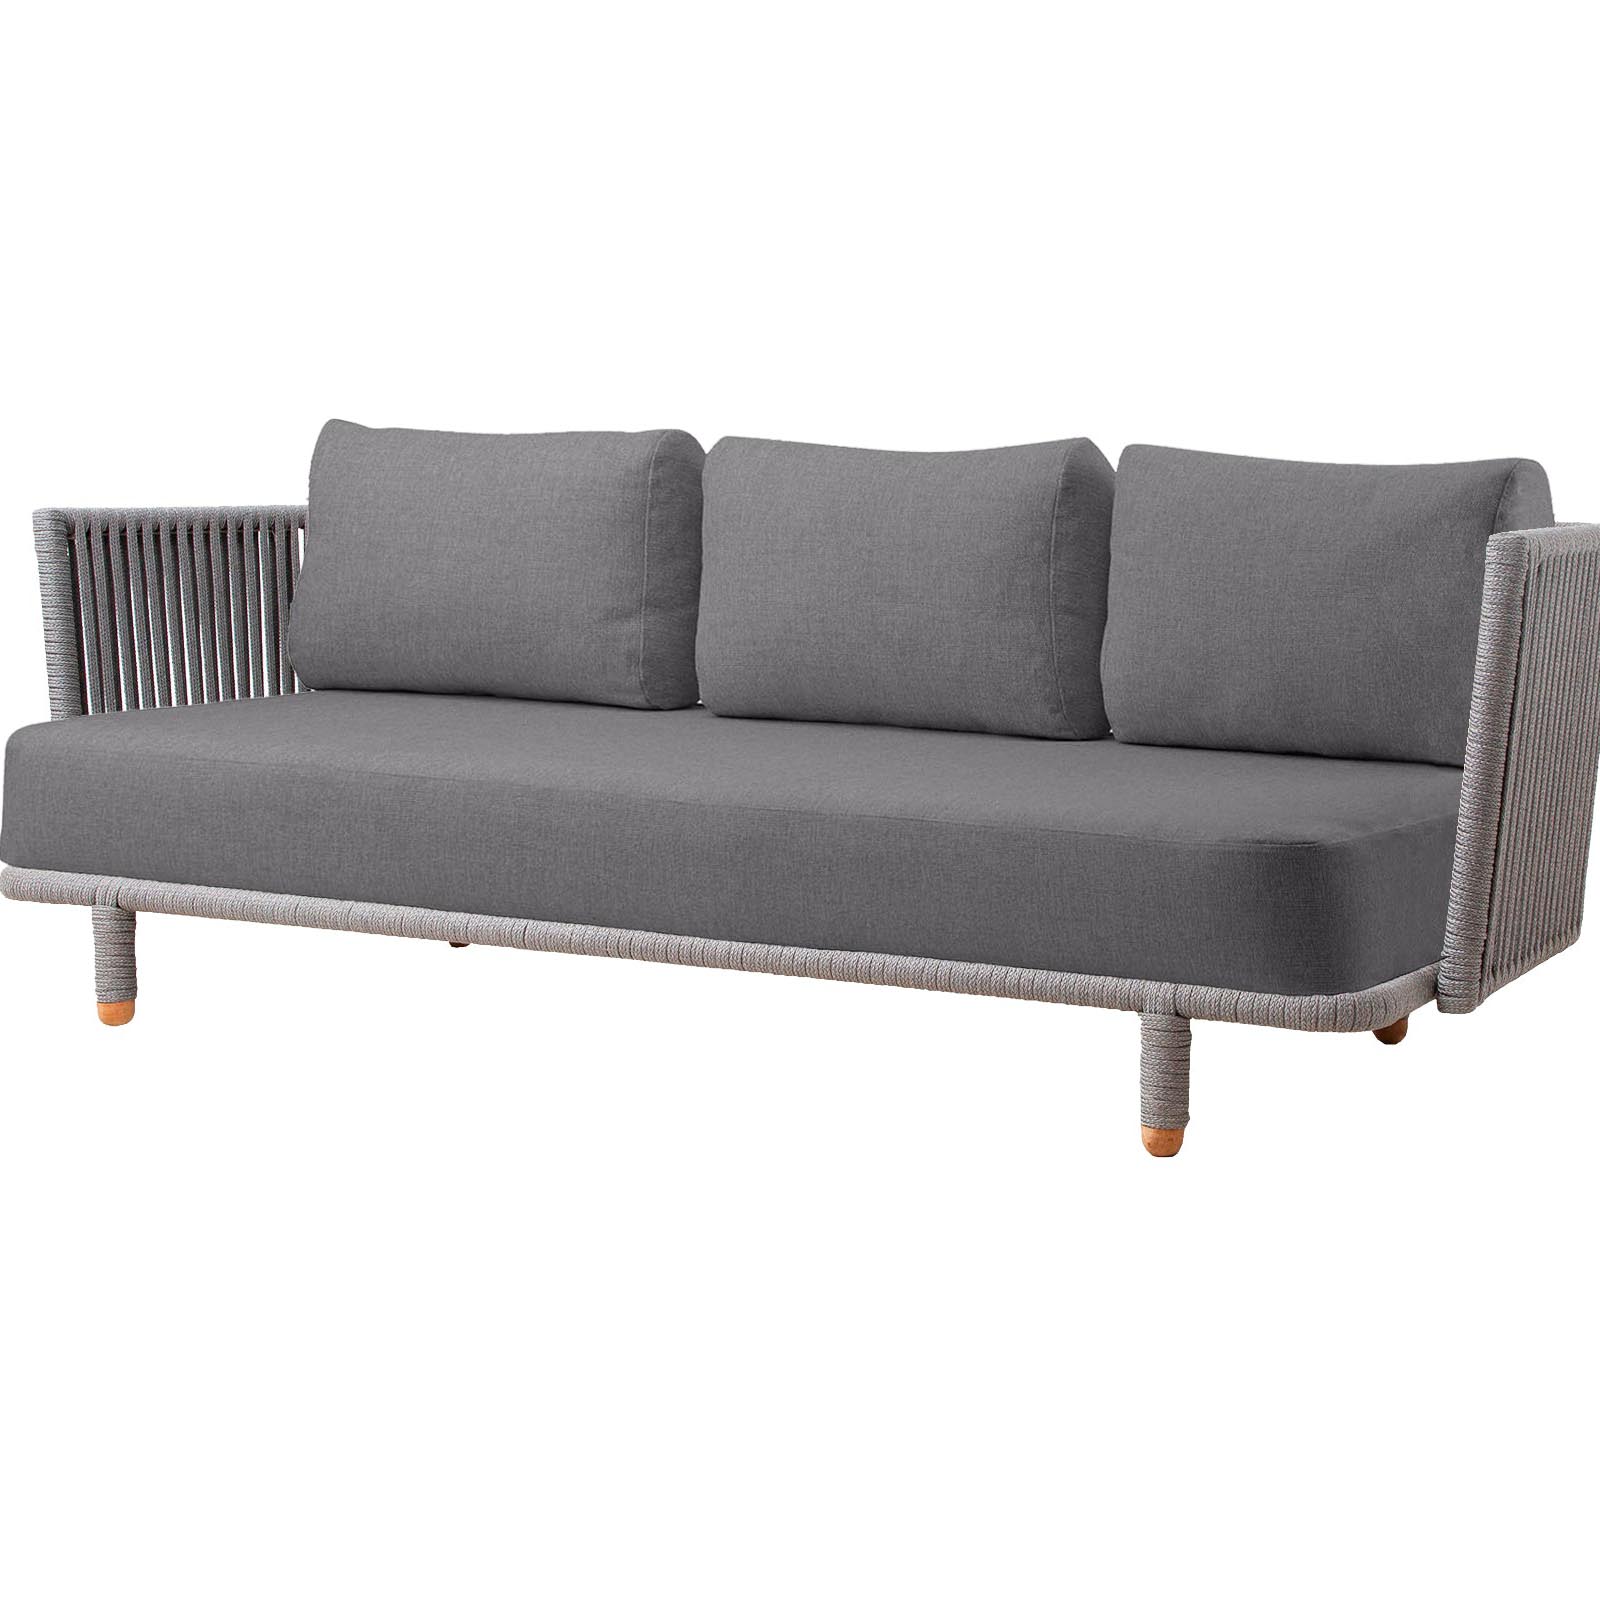 Moments 3-Sitzer Sofa aus Cane-line Soft Rope in Grey mit Kissen aus Cane-line Natté in Grey